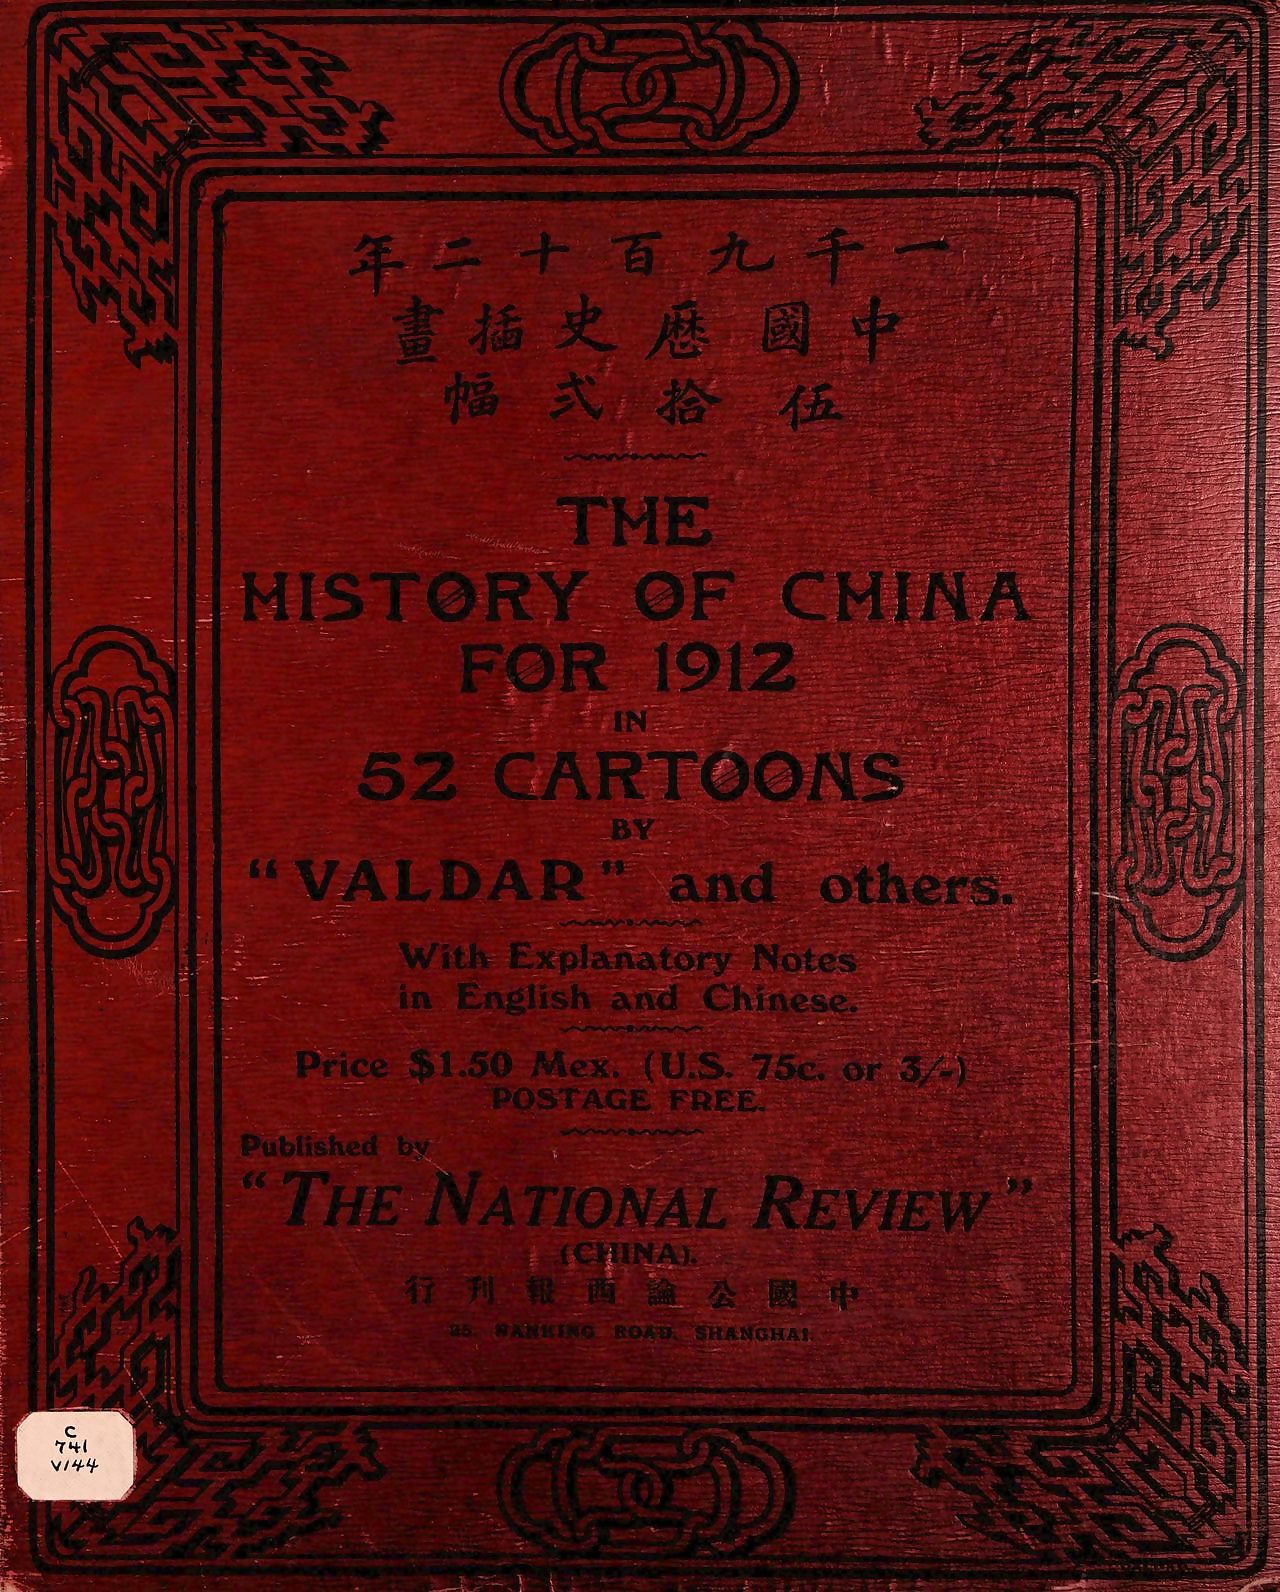 すると 渡された 月 利 すると 有 へ 一つ の a ペア すると 価値ある のための 1912 約 52 マンガ 一千九百十二年中国历史插画五十二幅